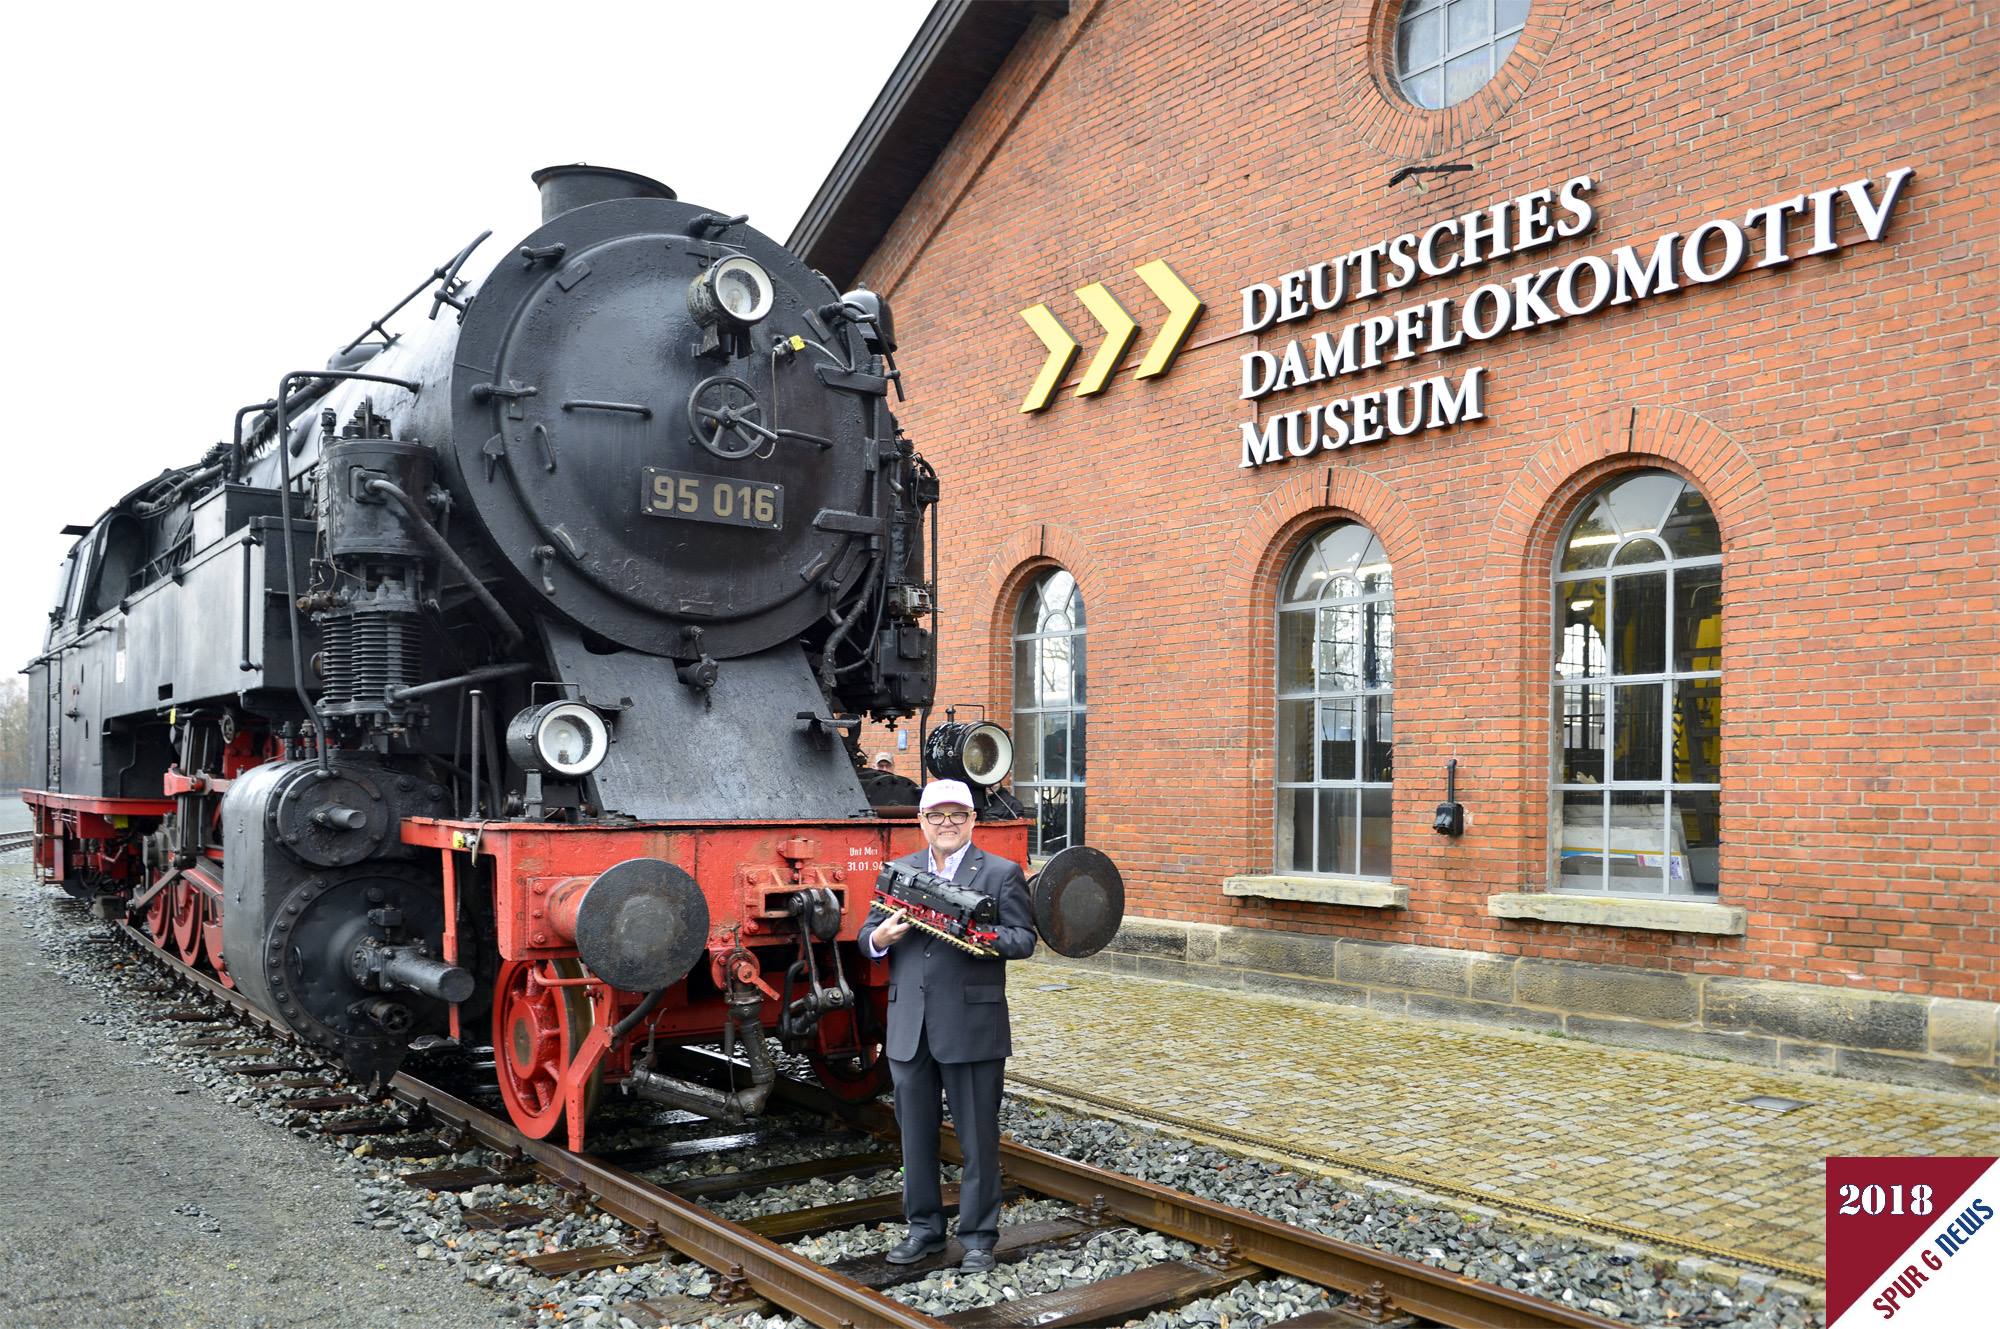 Eine Lokomotive der Baureihe 95 aus der Serienfertigung hielt Herr Dr. Ren F. Wilfer stolz zur Prsentation vor dem Original in Hnden. 